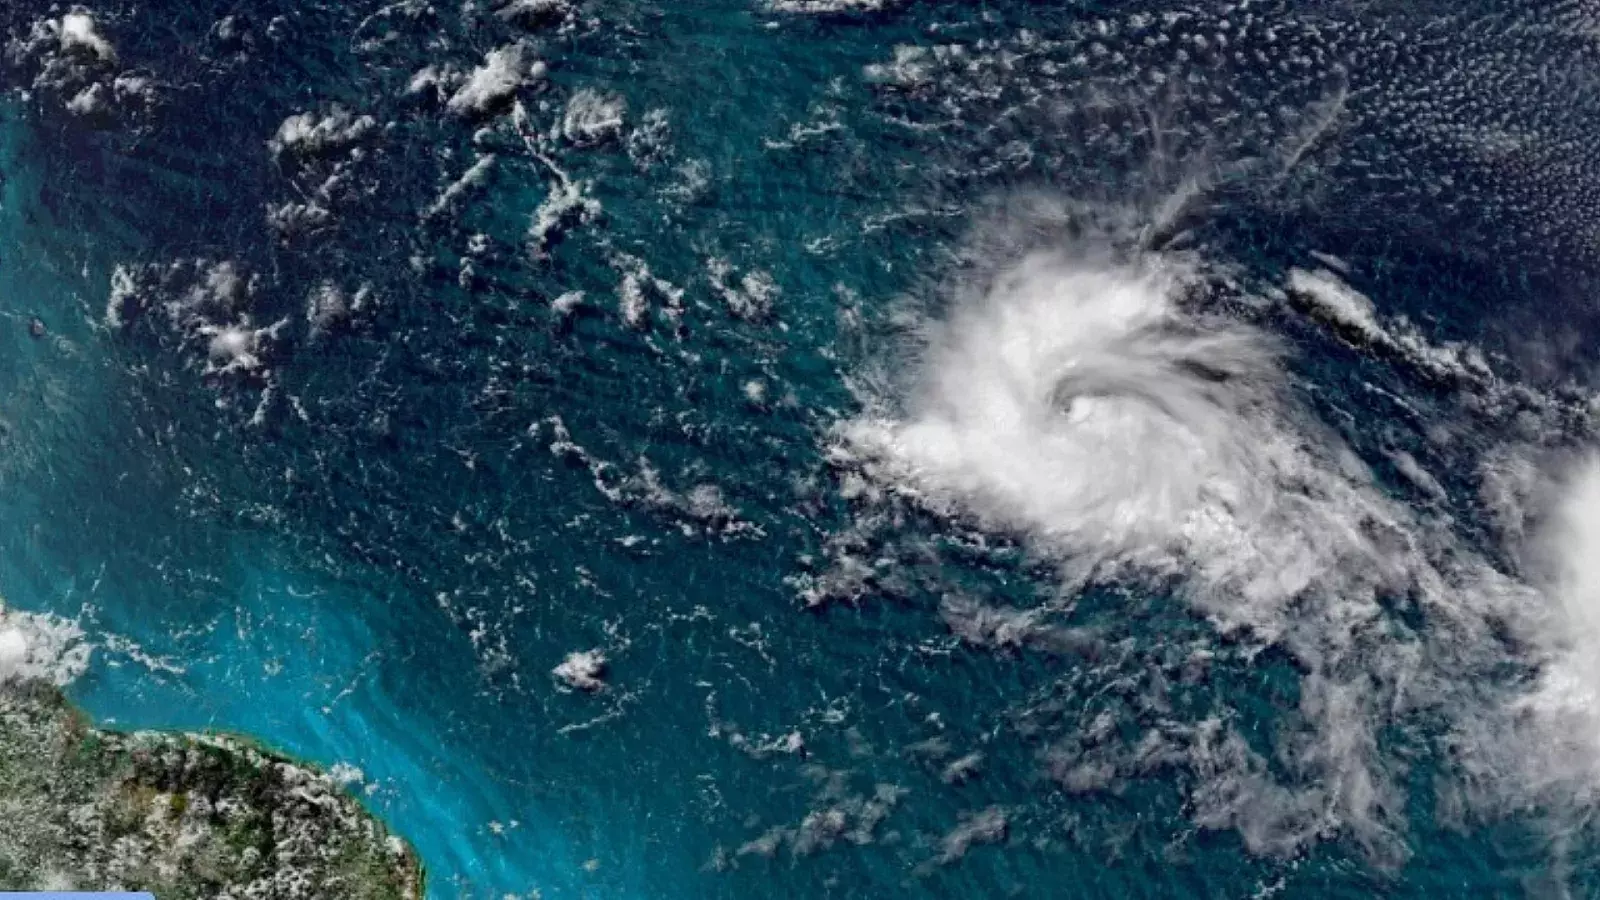 Imagen referencial de tormenta en el Caribe